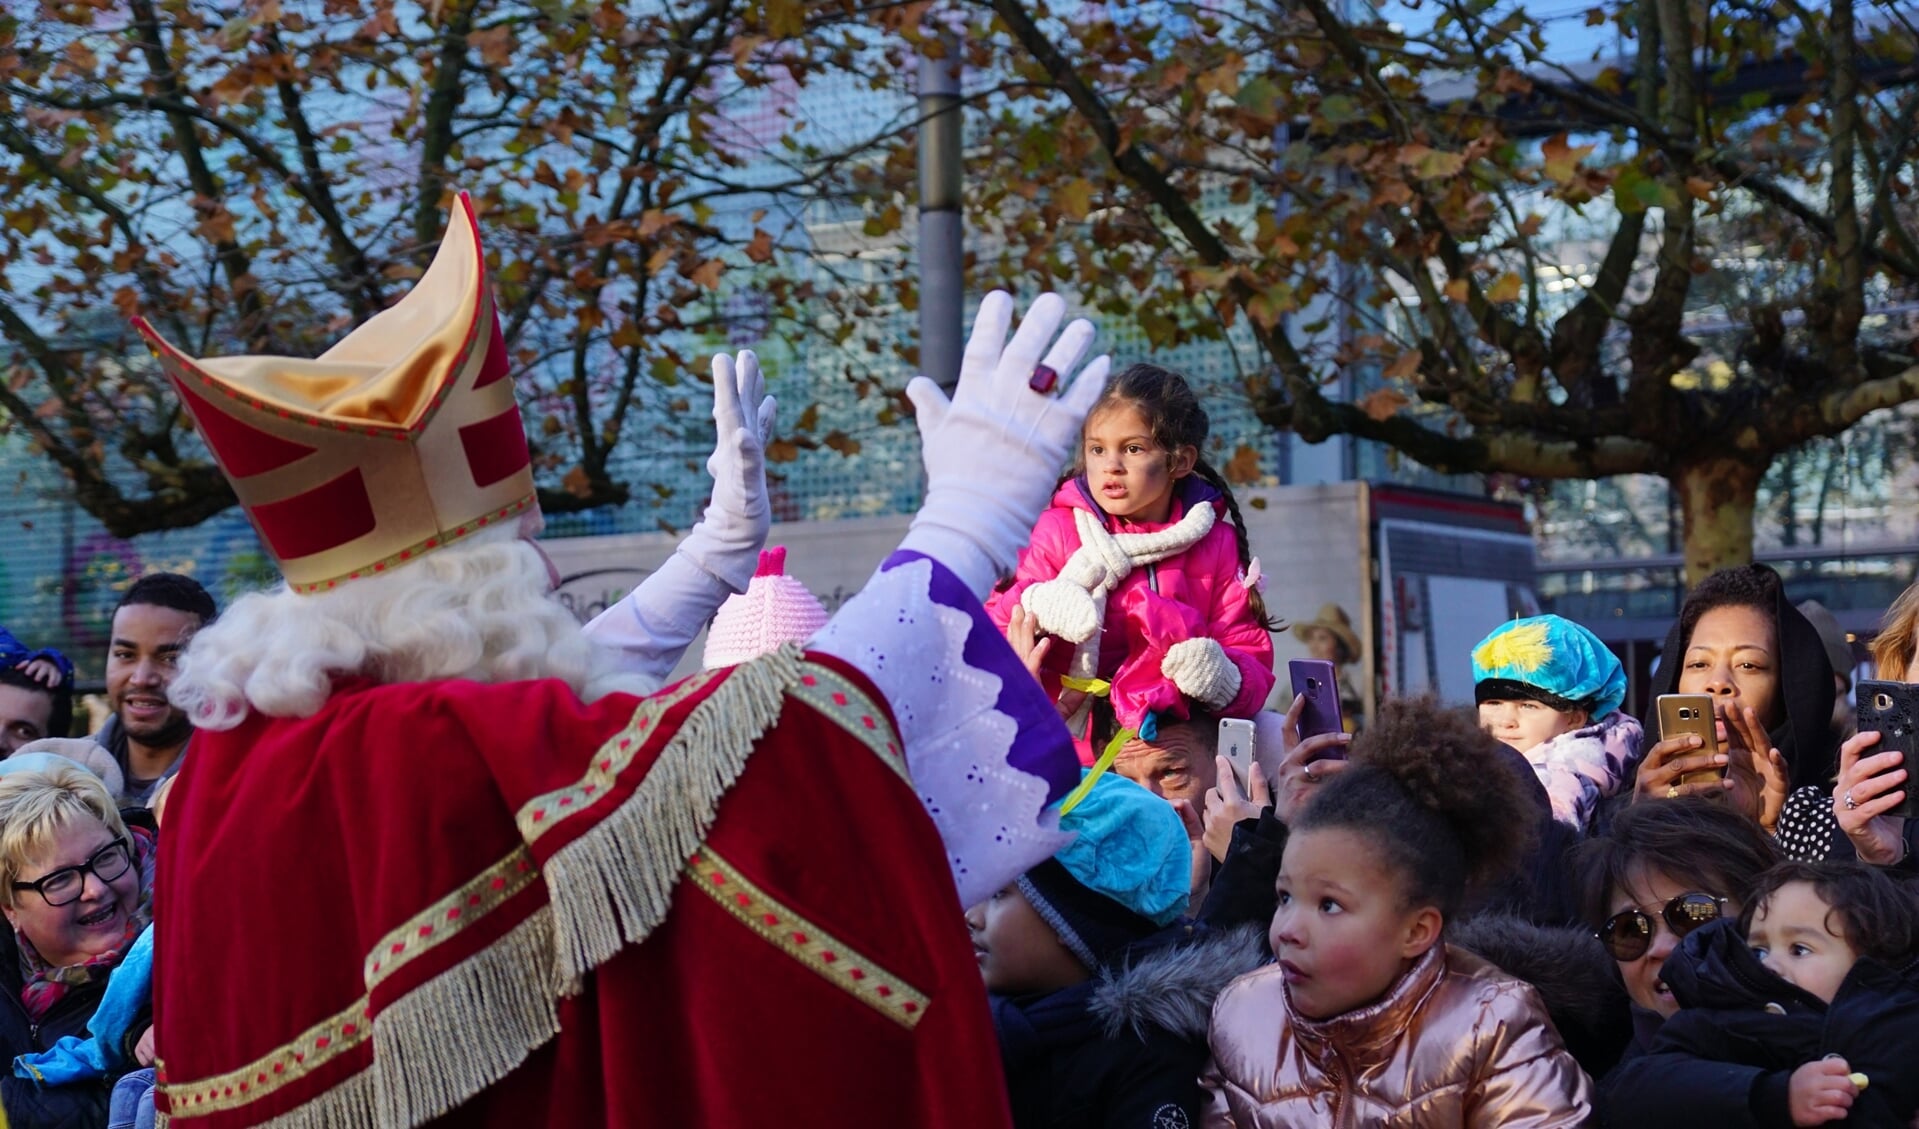 Vanwege de coronamaatregelen is de traditionele intocht van Sint dit jaar niet mogelijk.